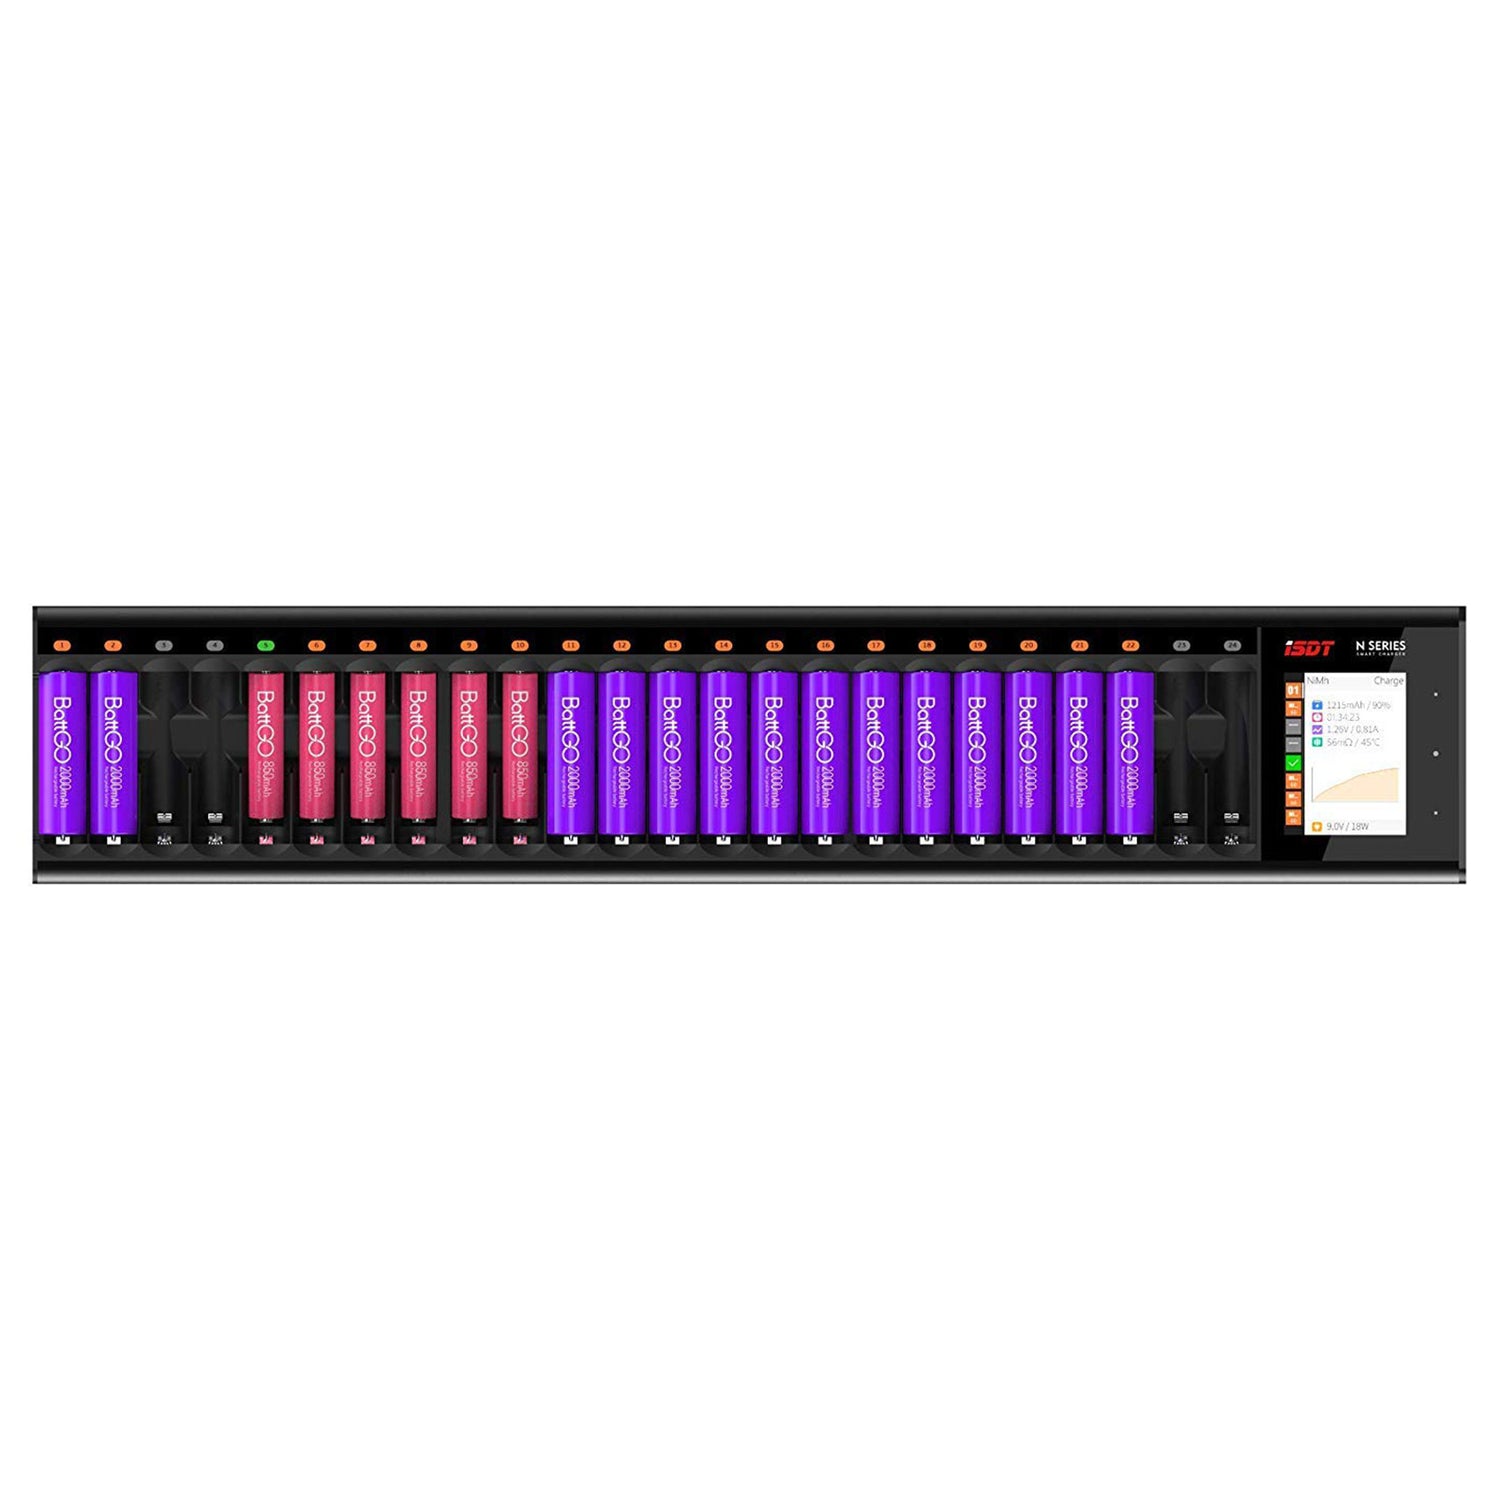 N24 LCD 24-Slot-Batterieladegerät für wiederaufladbare Batterien, 48W schnelles Ladegerät für AA/AAA-Batterien